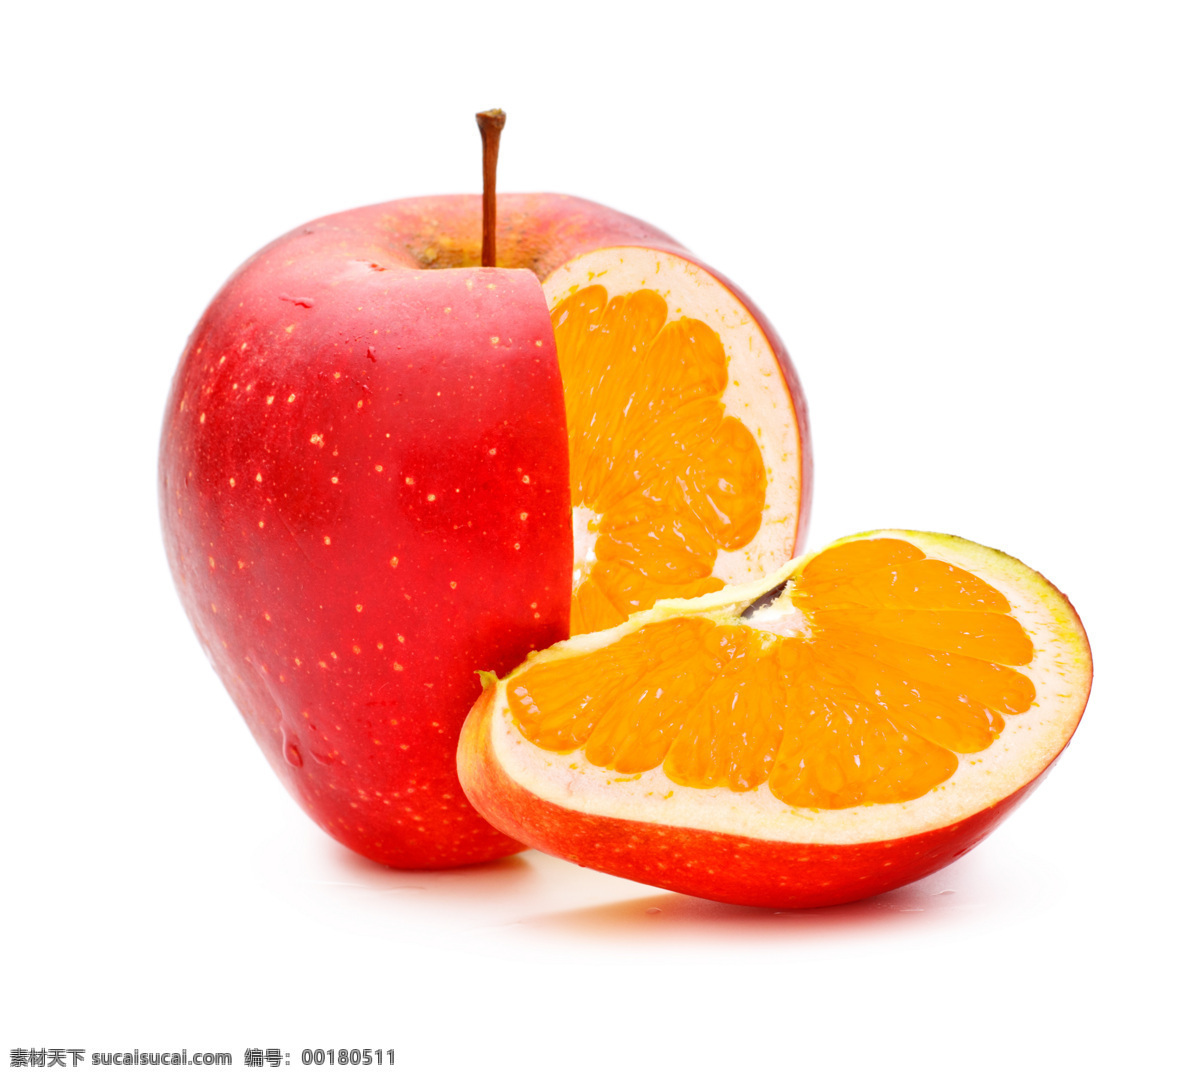 创意 苹果 创意苹果 红苹果 富士苹果 苹果图片 苹果高清图片 柠檬 切开的苹果 创意水果 水果 餐饮美食